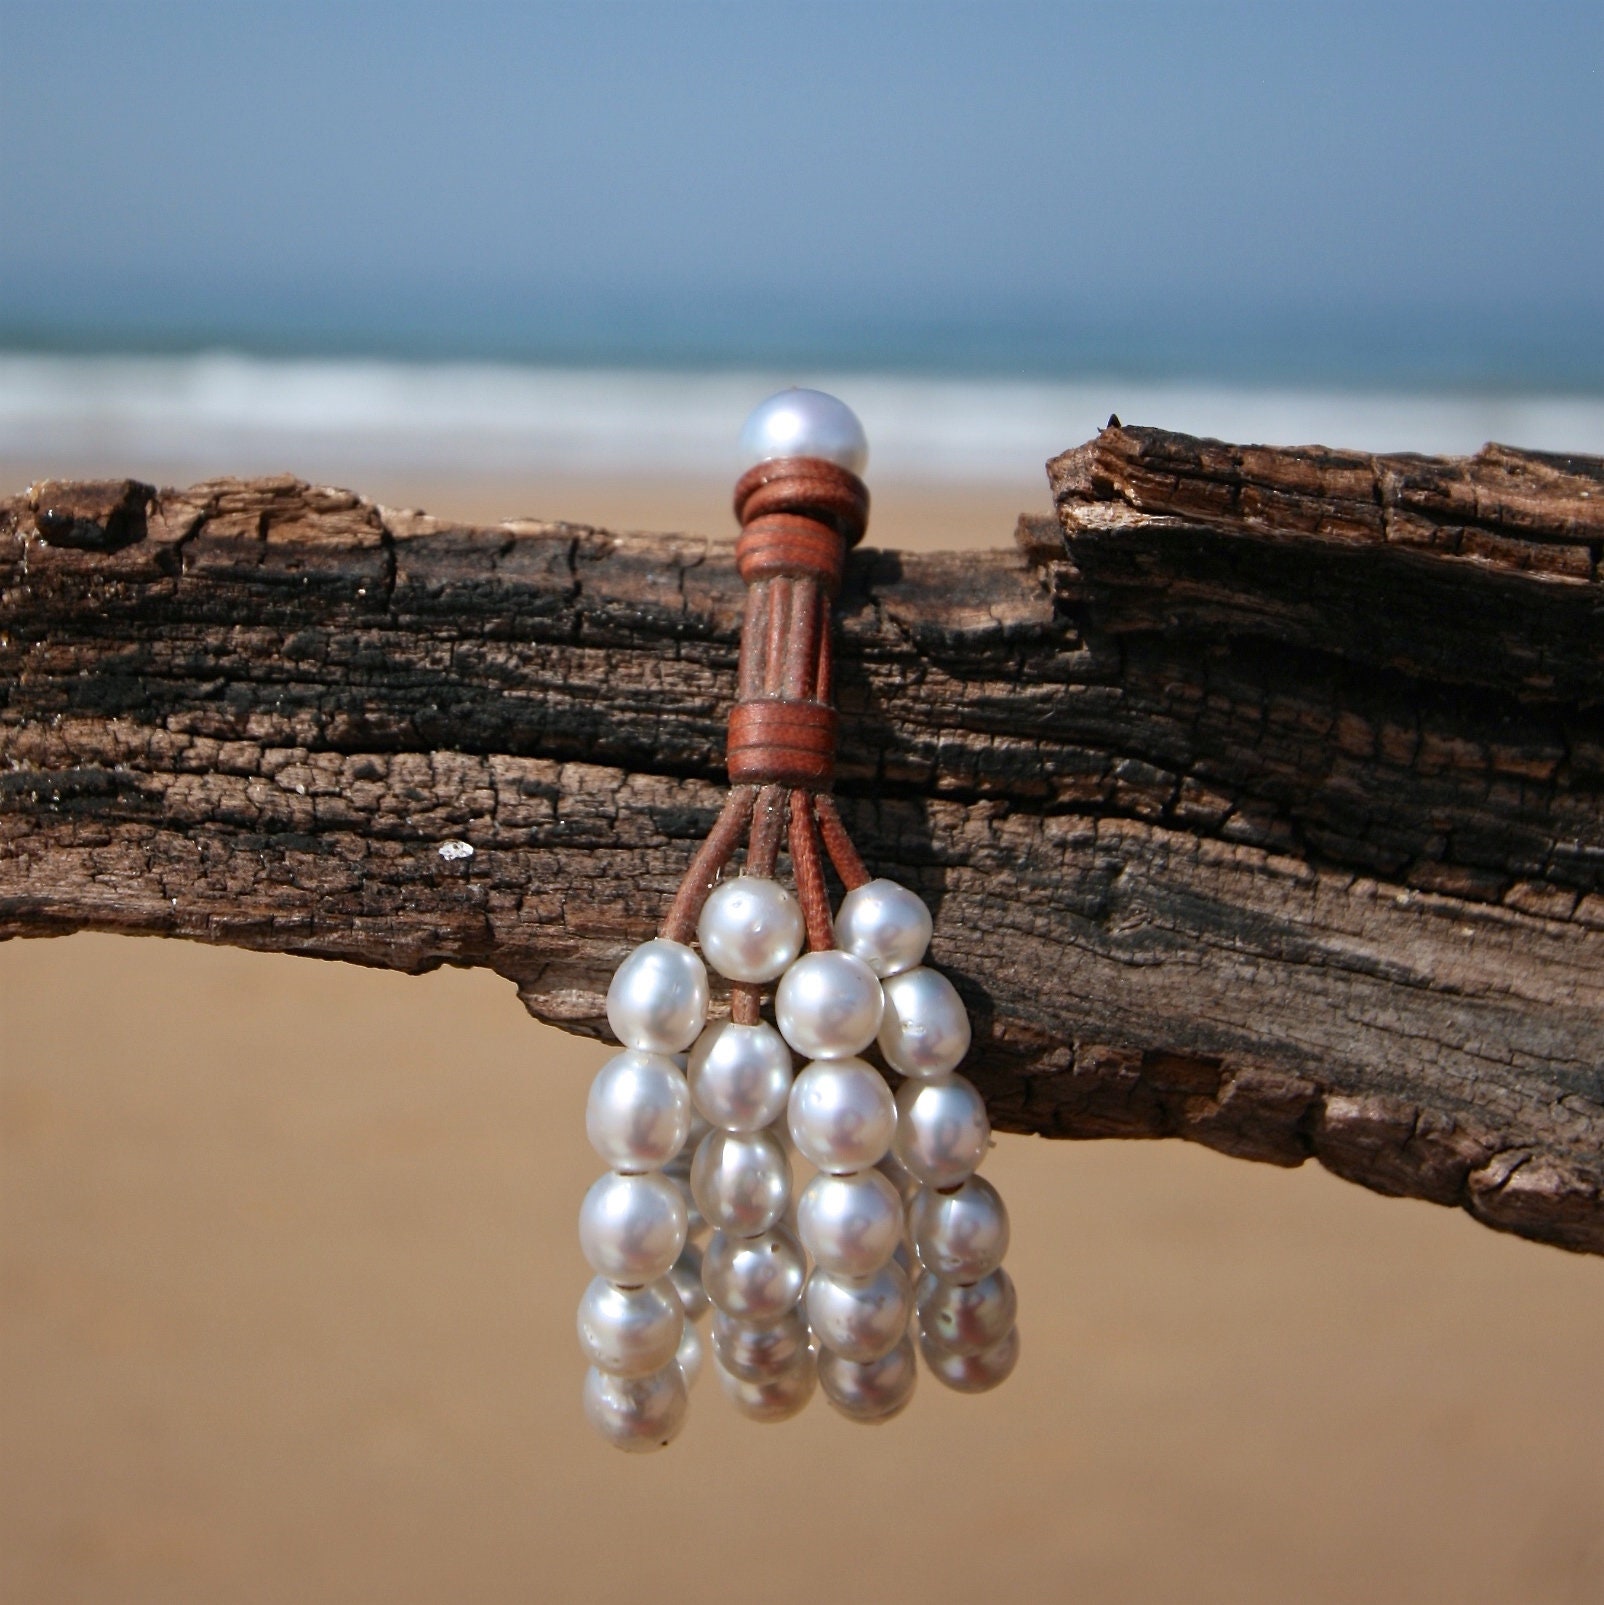 Trésors de St Barth - Four strands cuff bracelet of white Australian pearls  !